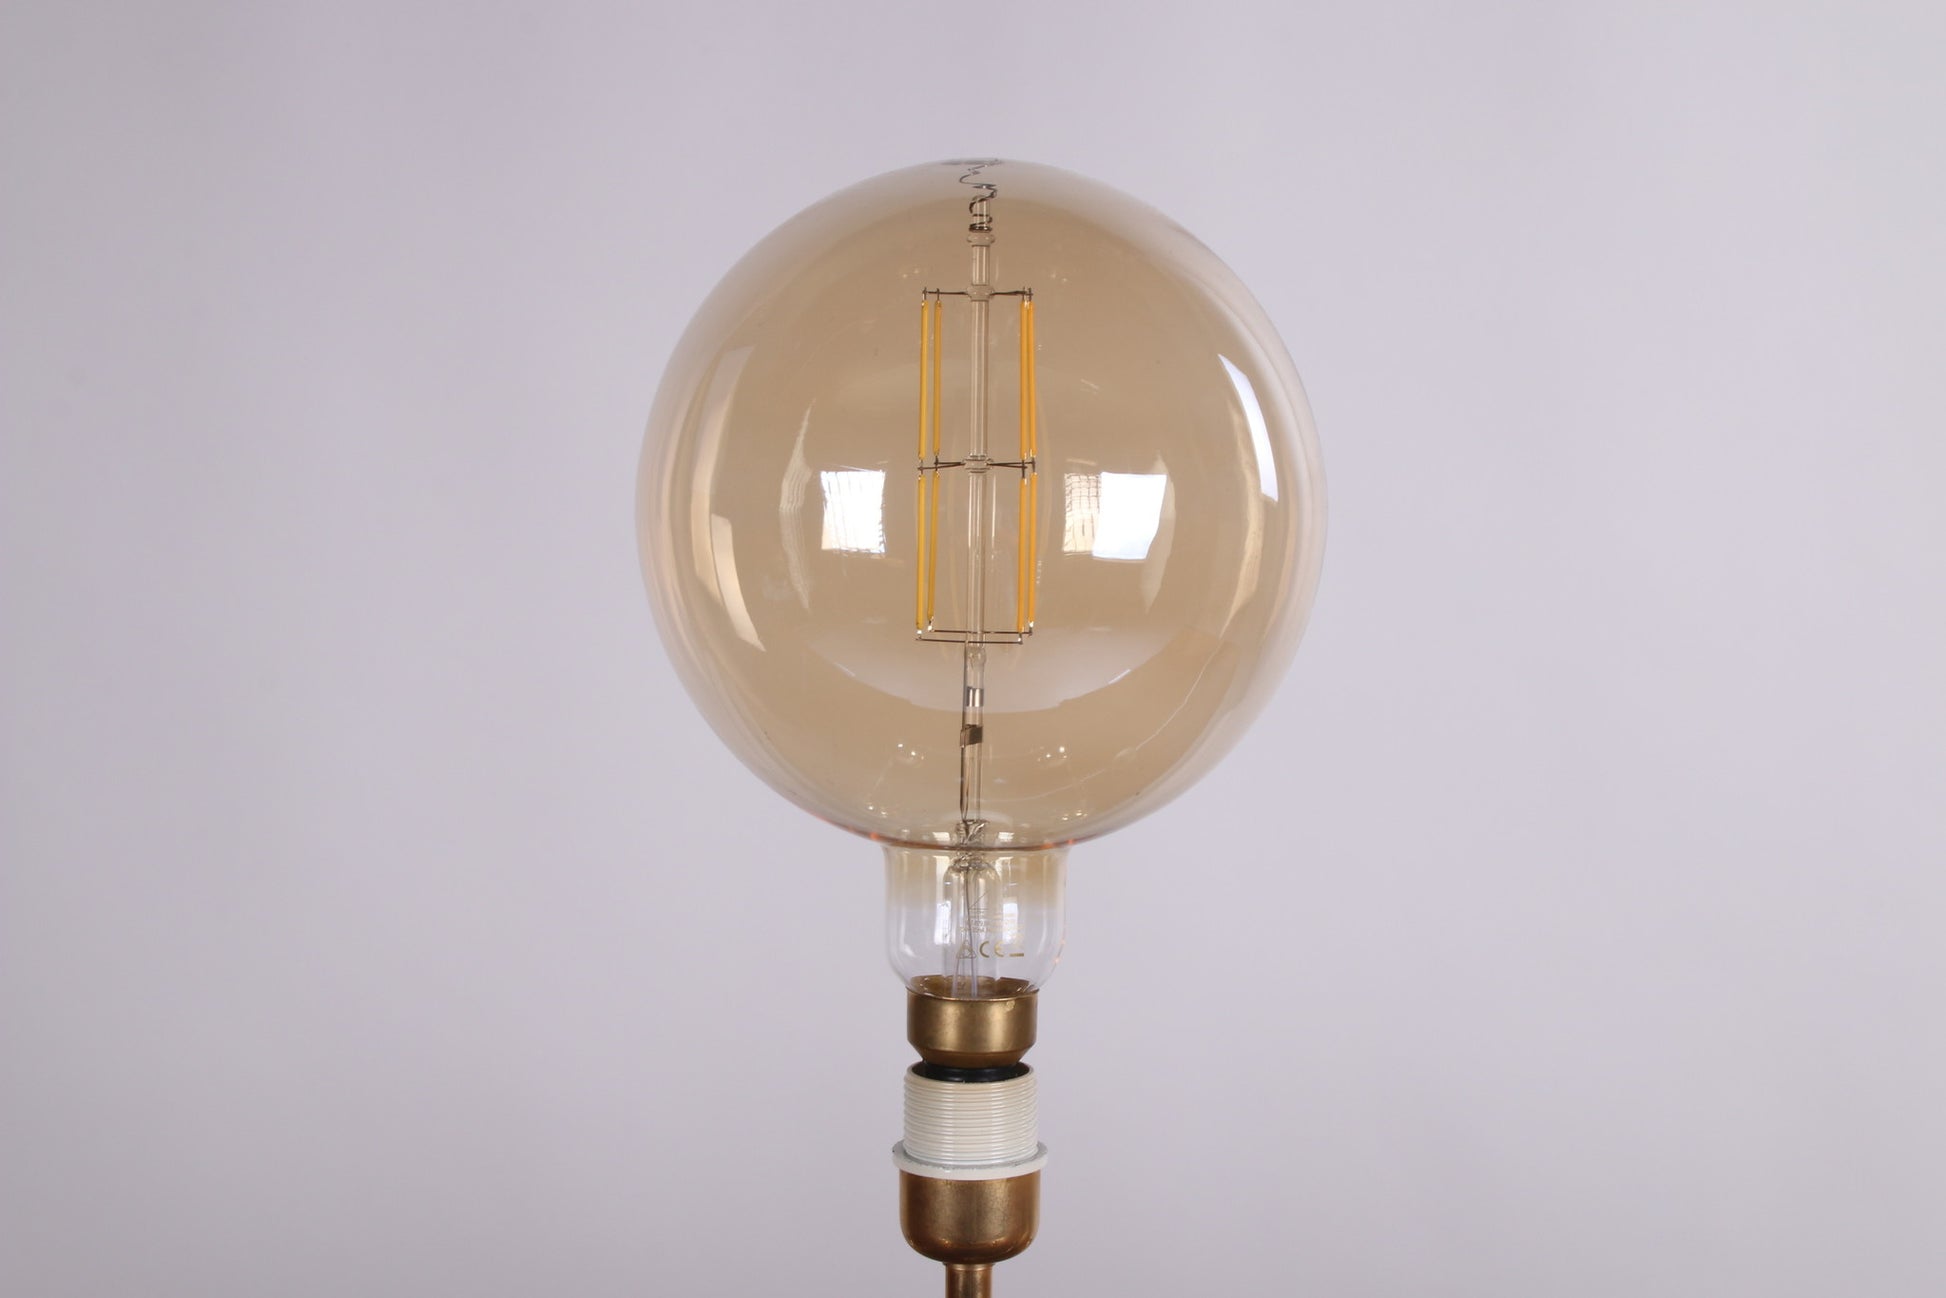 Hollywood Regency Tafellamp jaren 70s detail lamp